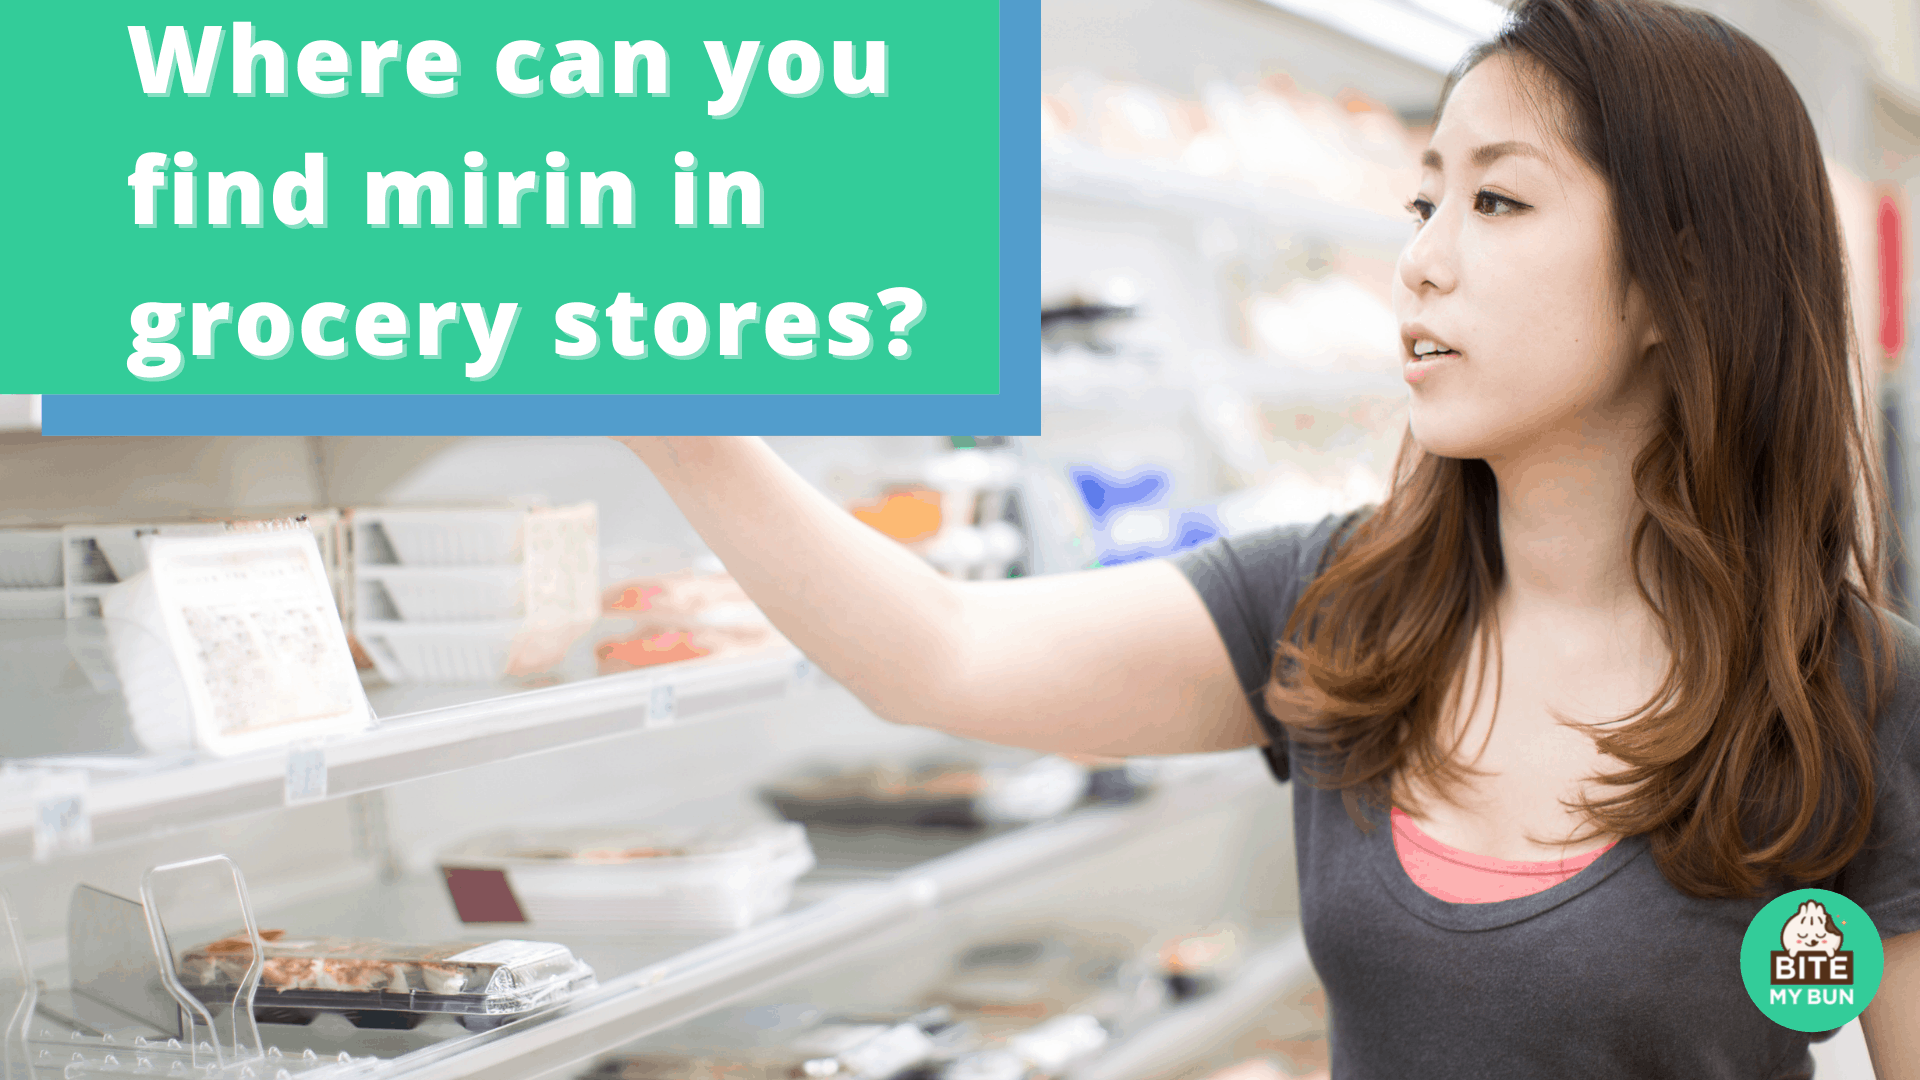 คุณสามารถหามิรินในร้านขายของชำได้ที่ไหน?